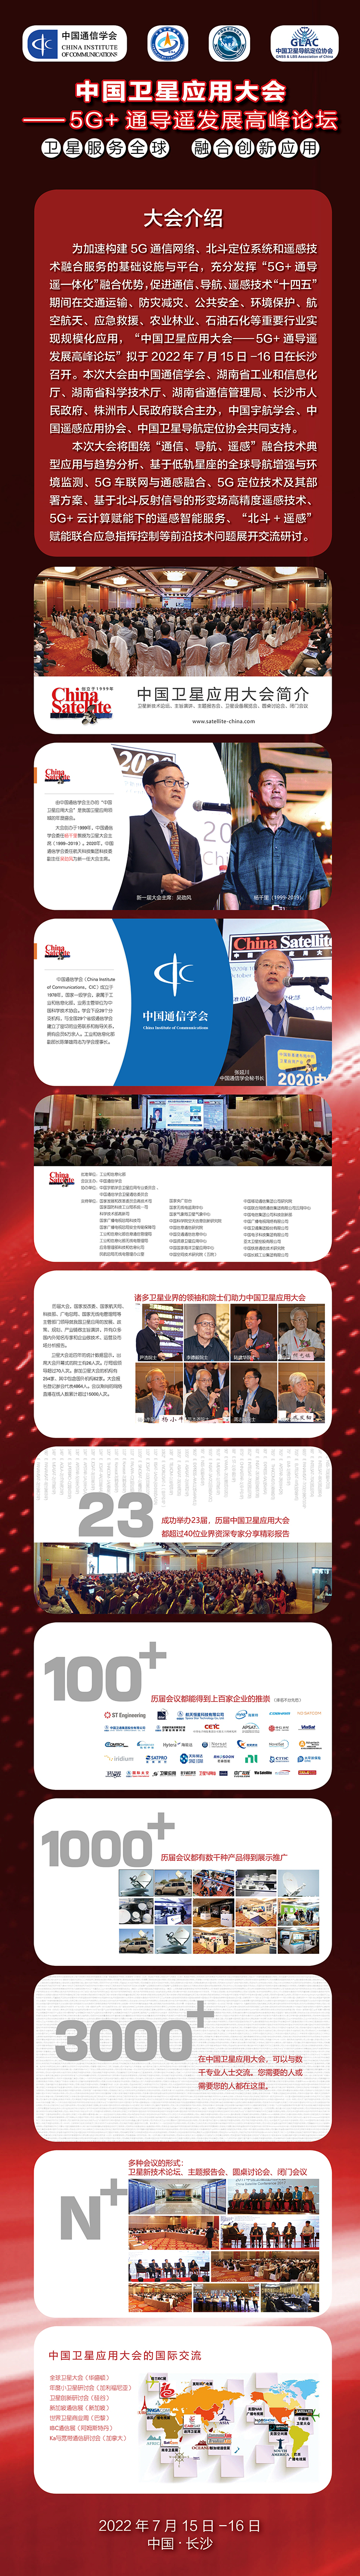 中国卫星应用大会—5G+通导遥发展高峰论坛